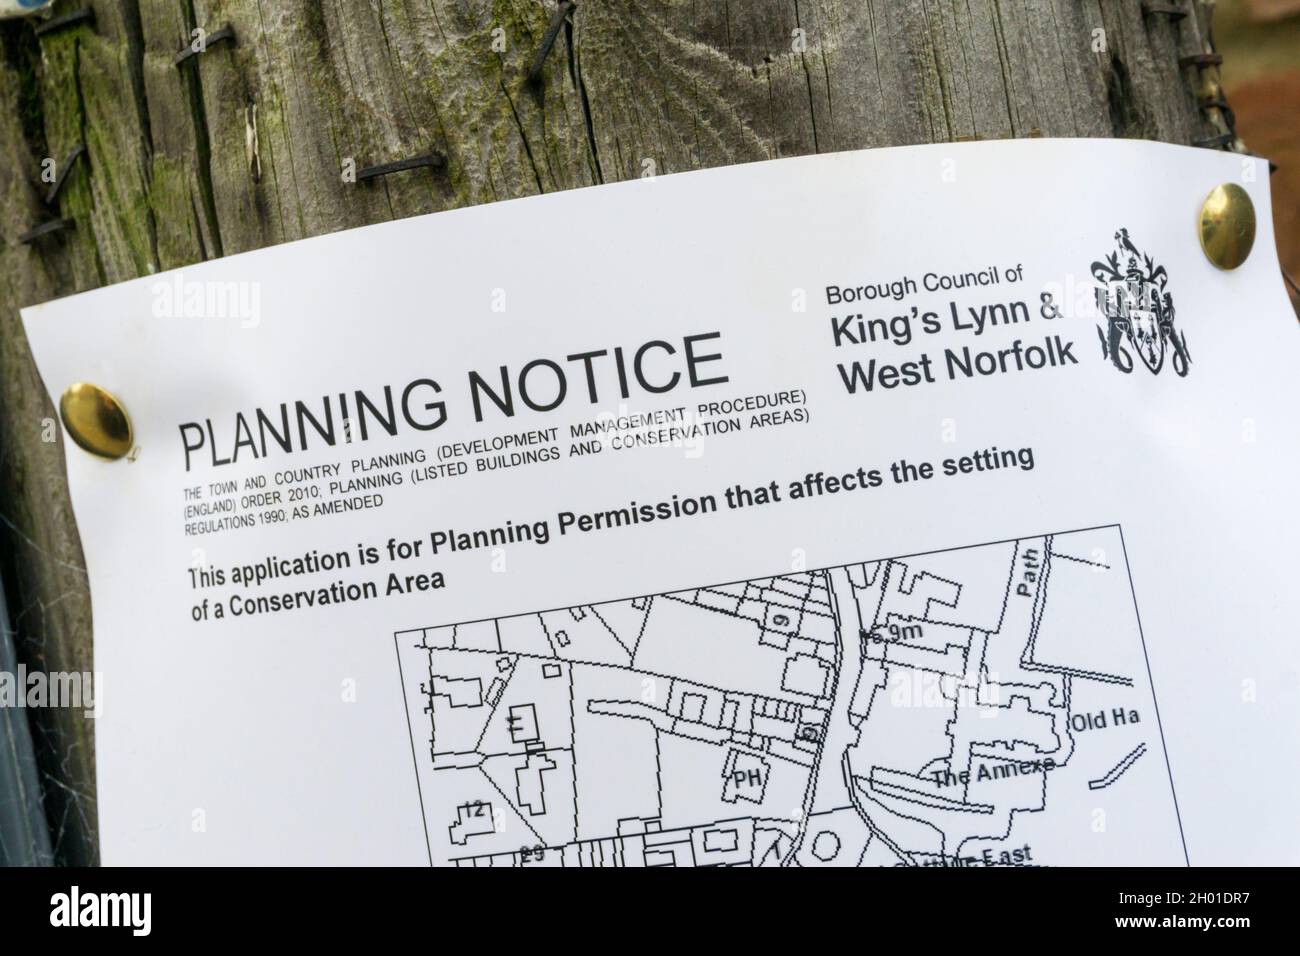 Avis de planification fixé à un immeuble dans le cadre de la demande de permission de planification touchant une aire de conservation. Banque D'Images